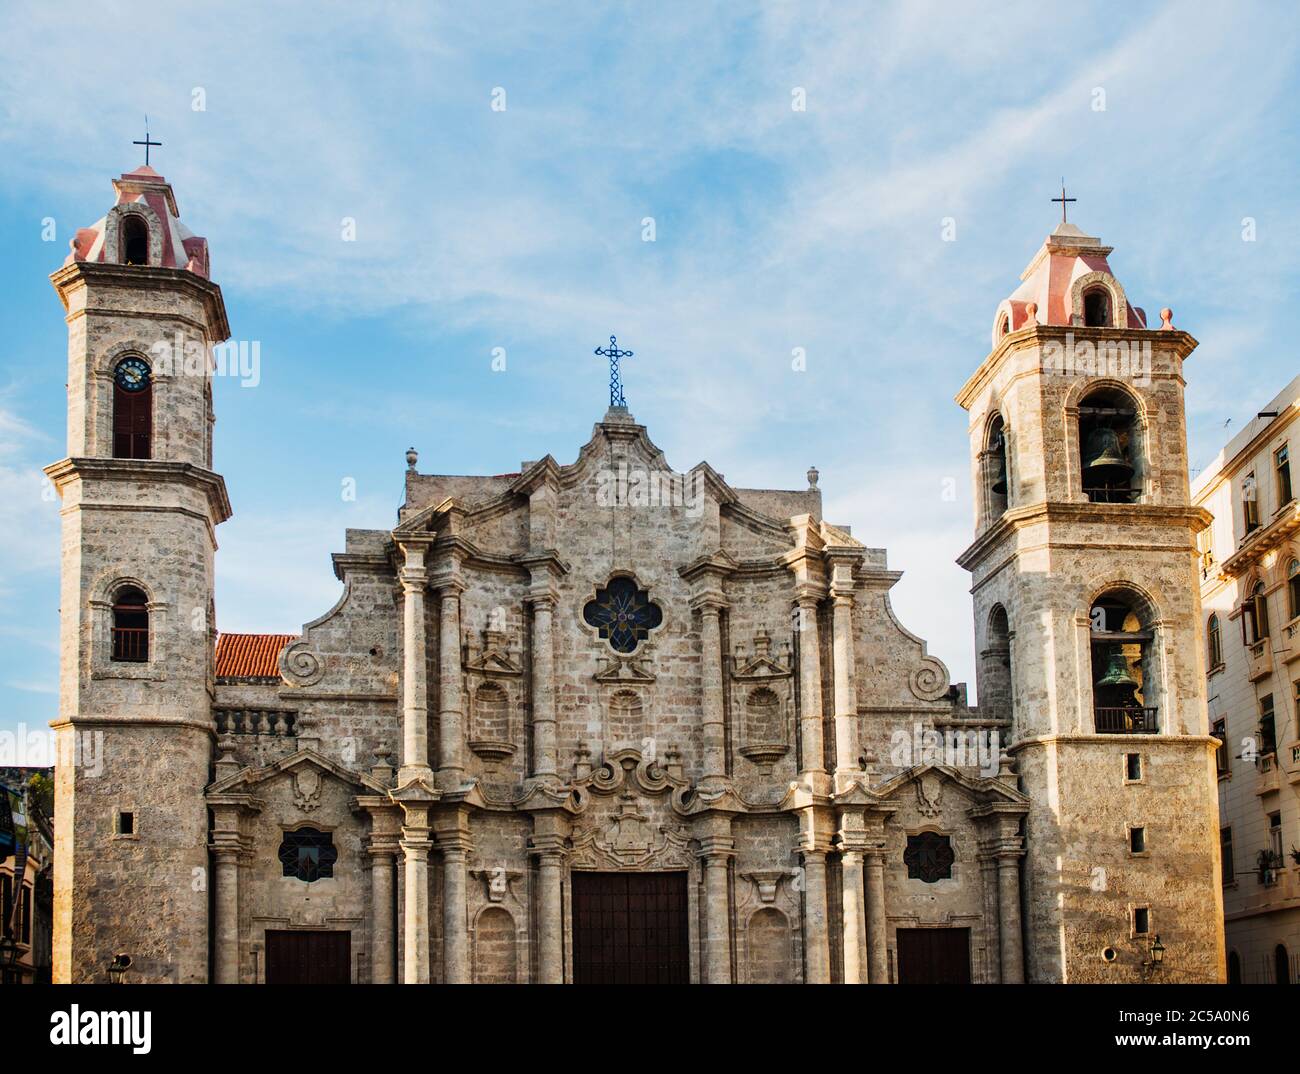 Cathédrale de la Havane, la Havane, Cuba, Amérique centrale Banque D'Images